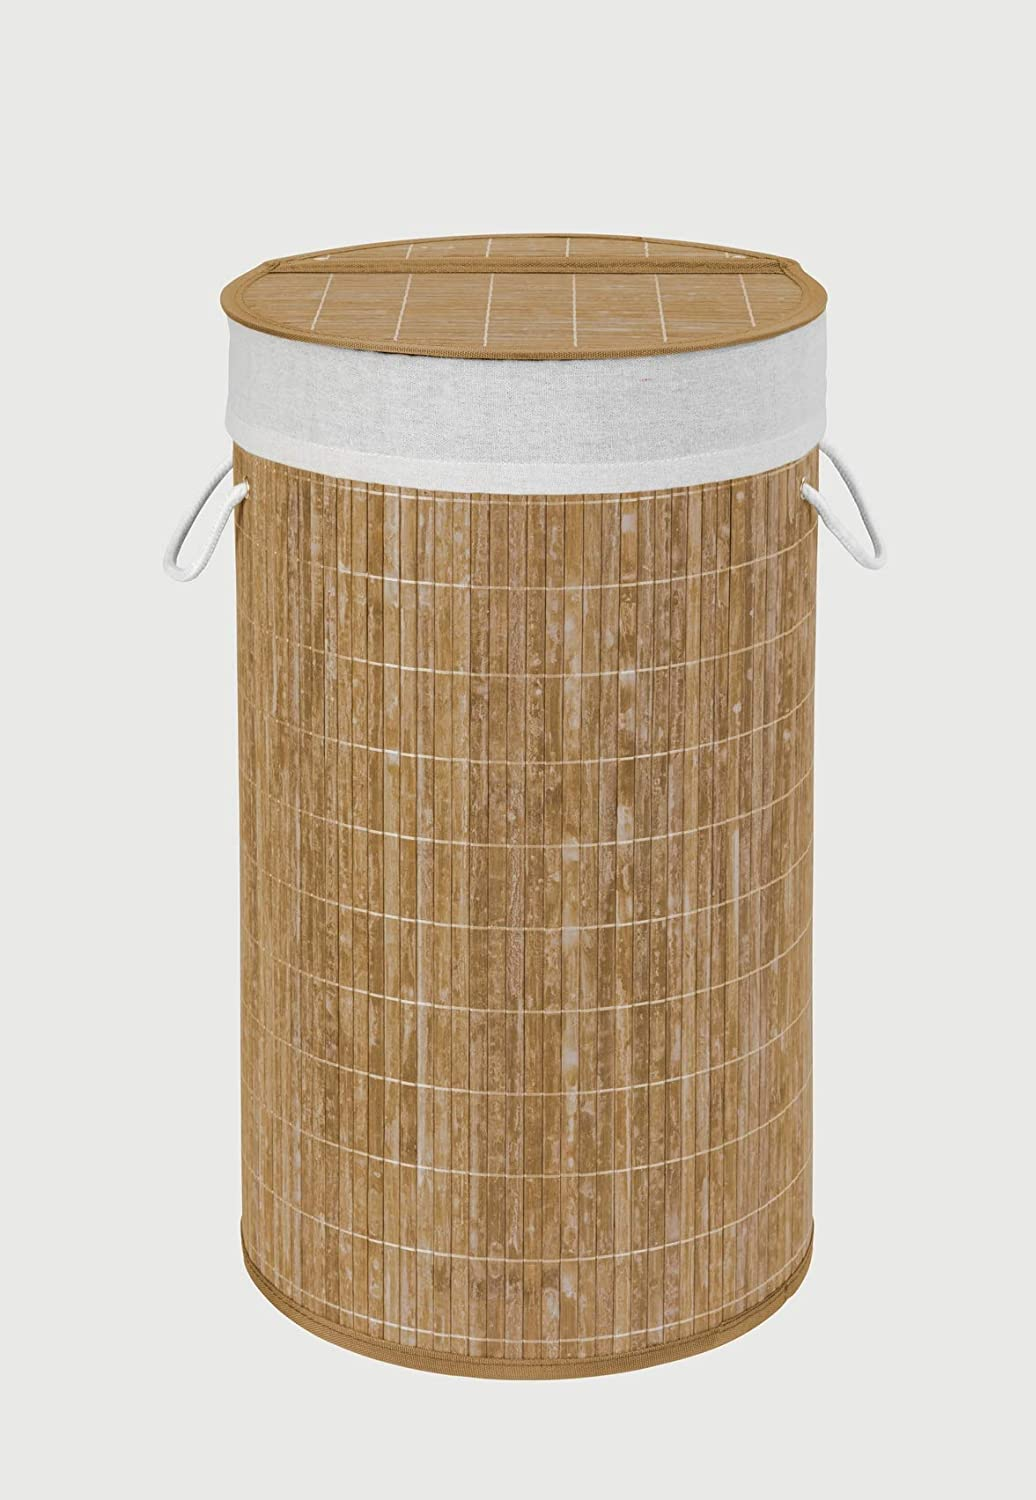 Wäschetruhe Bamboo Weiß - Wäschekorb, mit Wäschesack, Bambus, 35 x 60 x 35 cm, Weiß